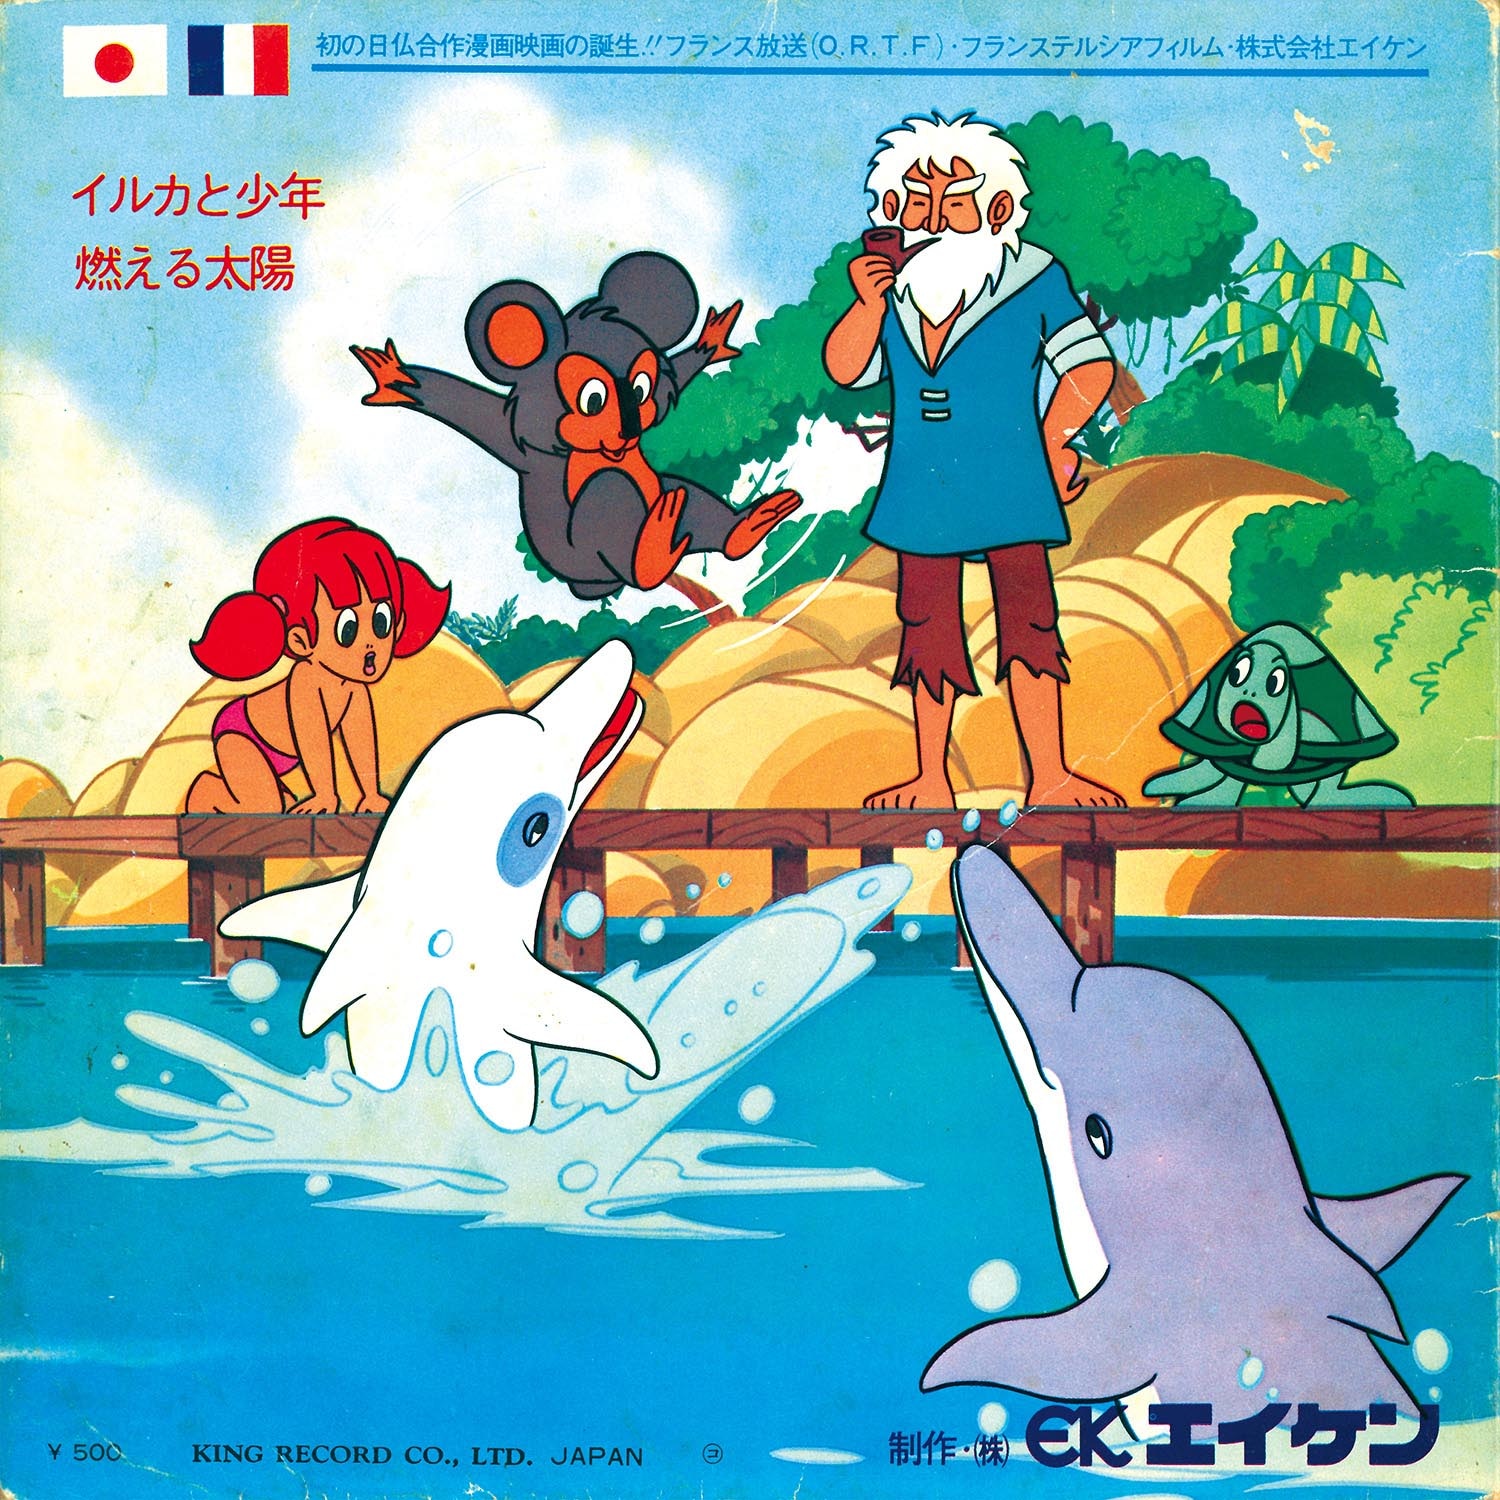 5811] キングレコード [TV(H)-13] イルカと少年/燃える太陽